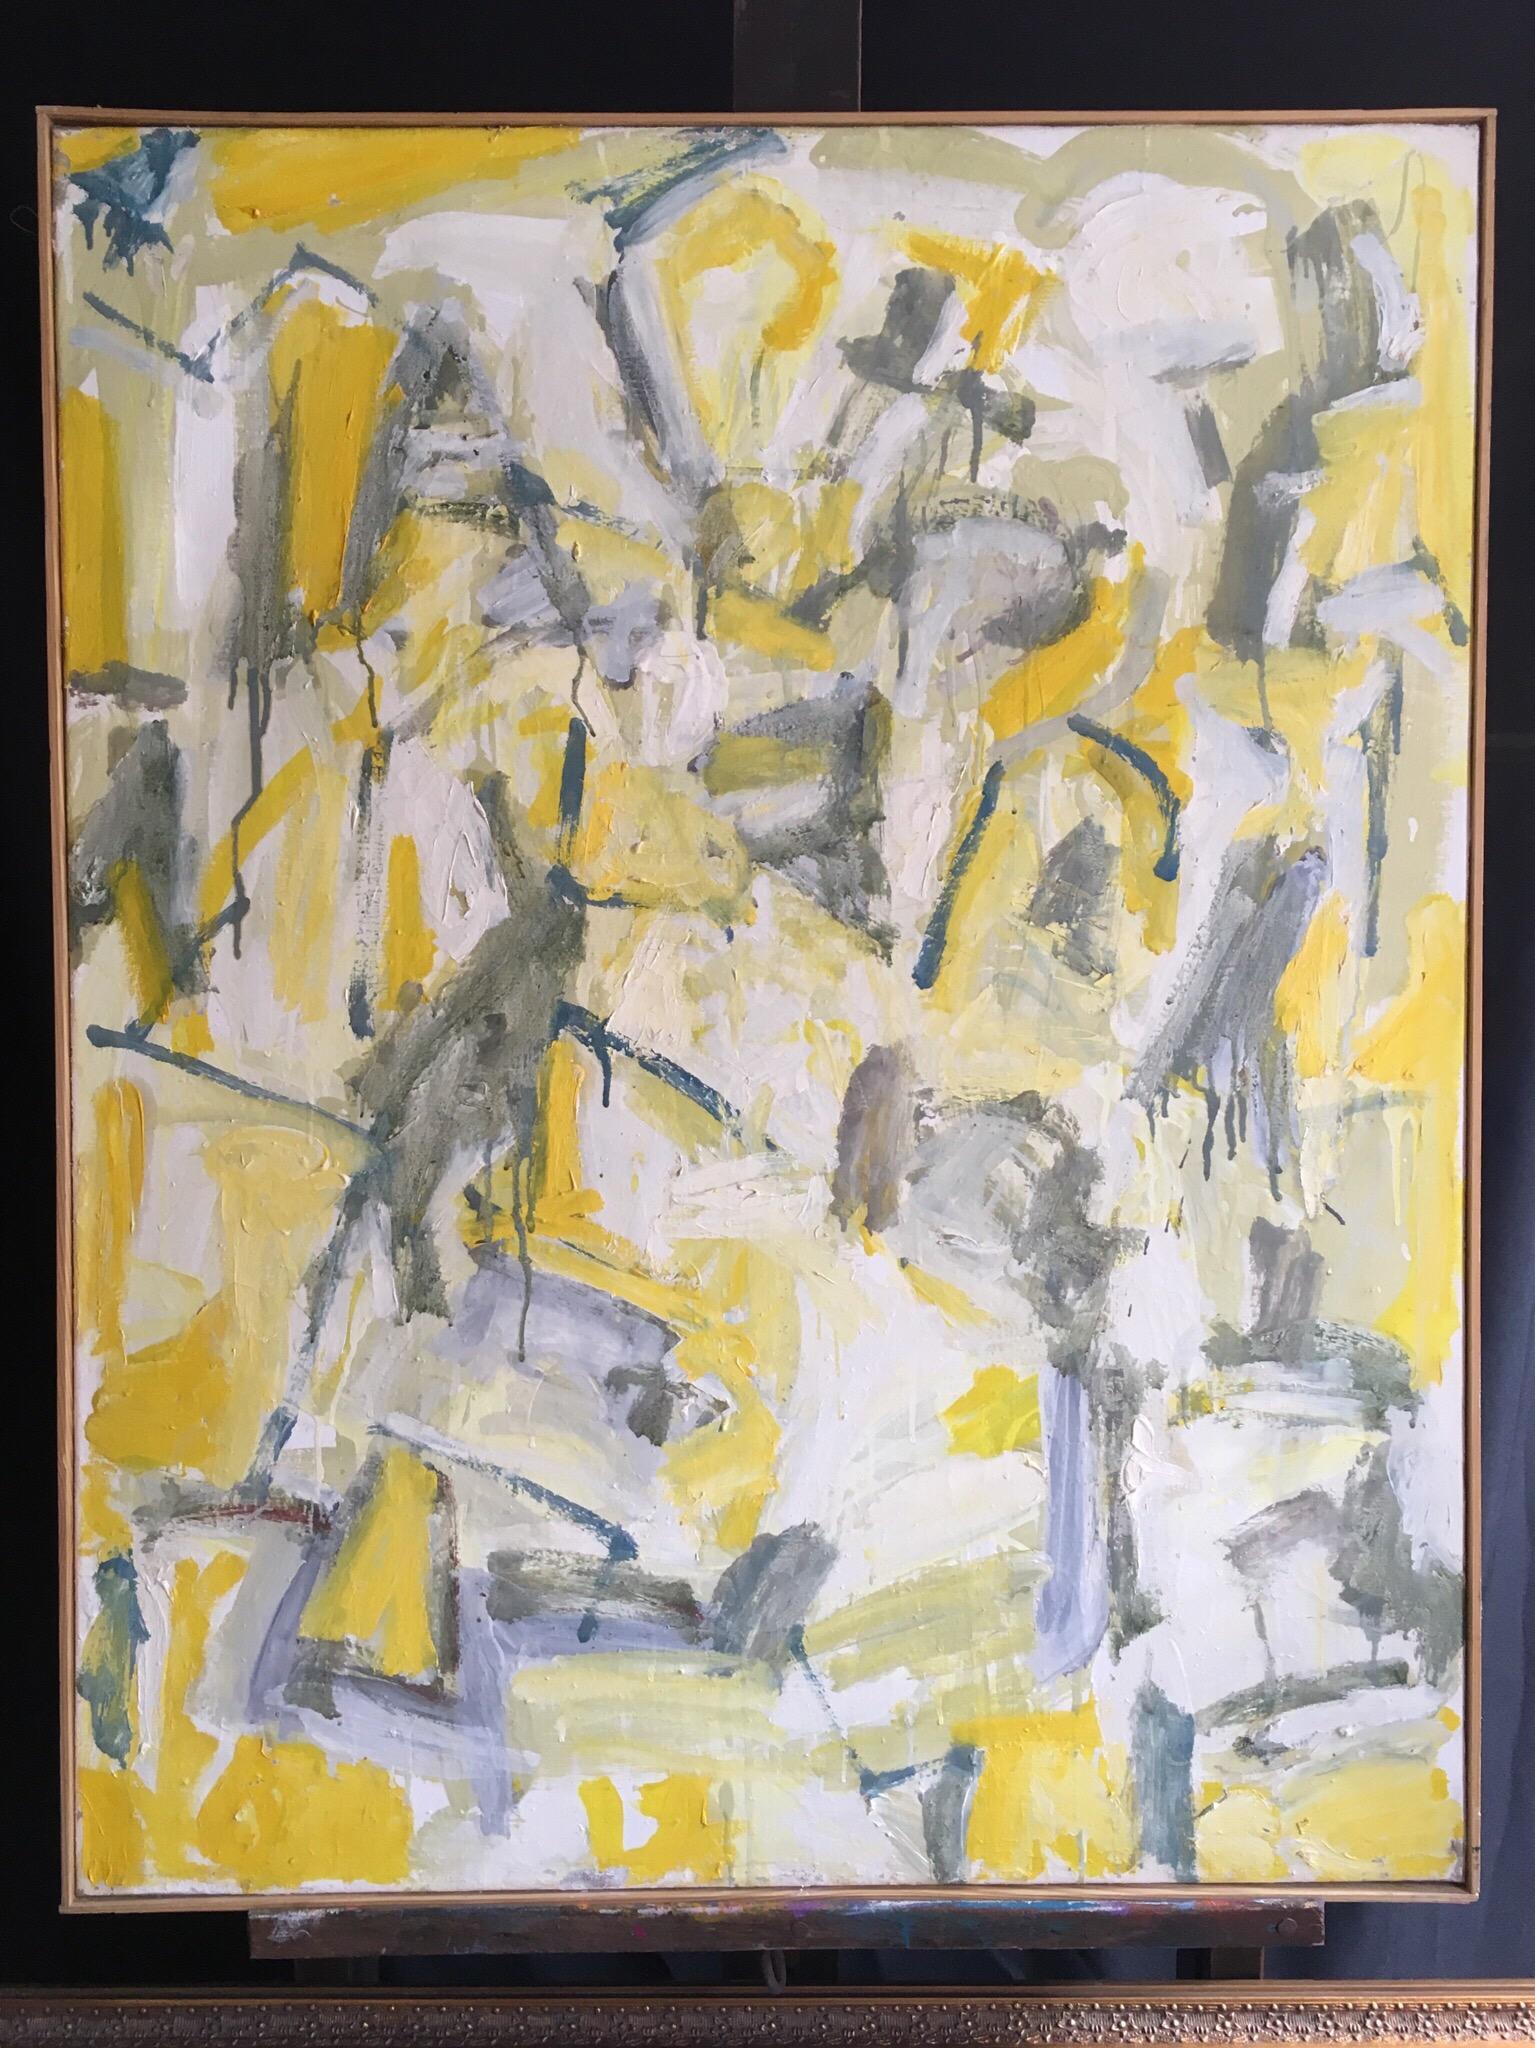 Abstraktes, großes Ölgemälde auf Leinwand, kubistisches expressionistisches Werk in Gelb und Grau – Painting von Unknown